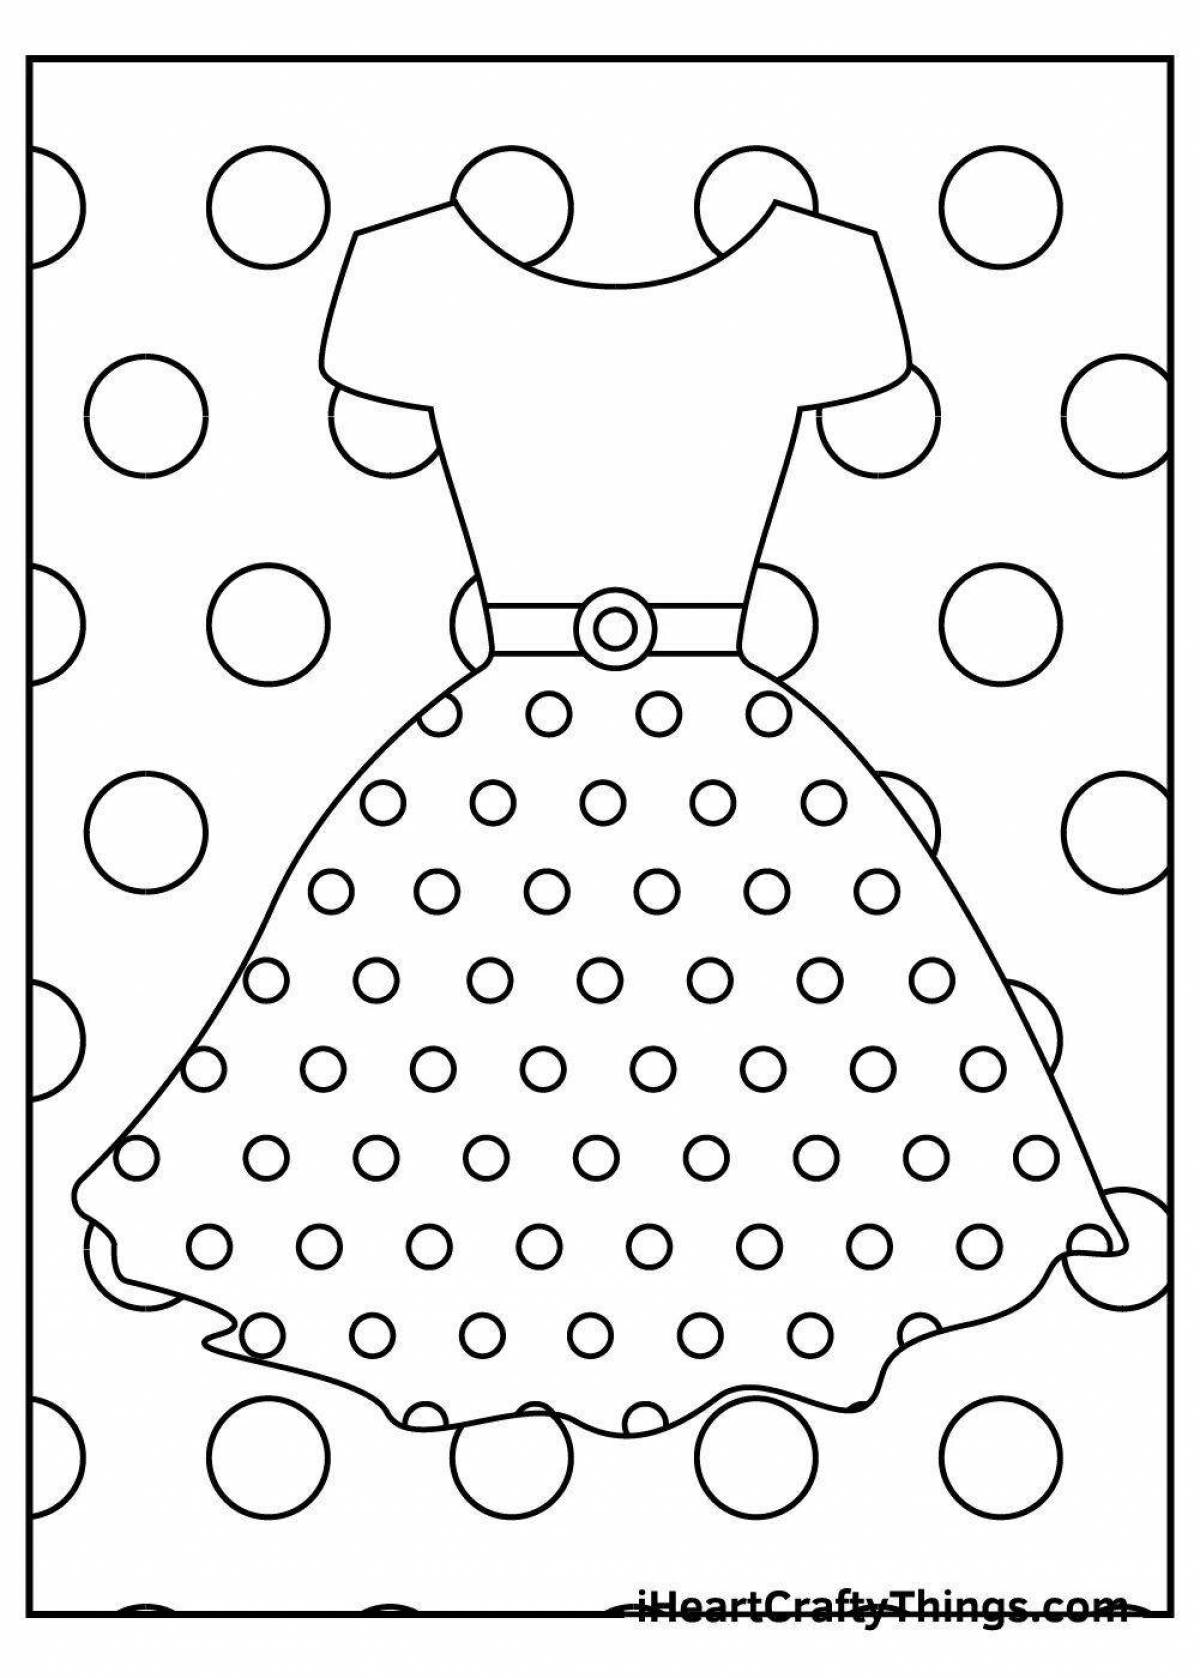 Раскраска светящегося кукольного платья для детей 3-4 лет